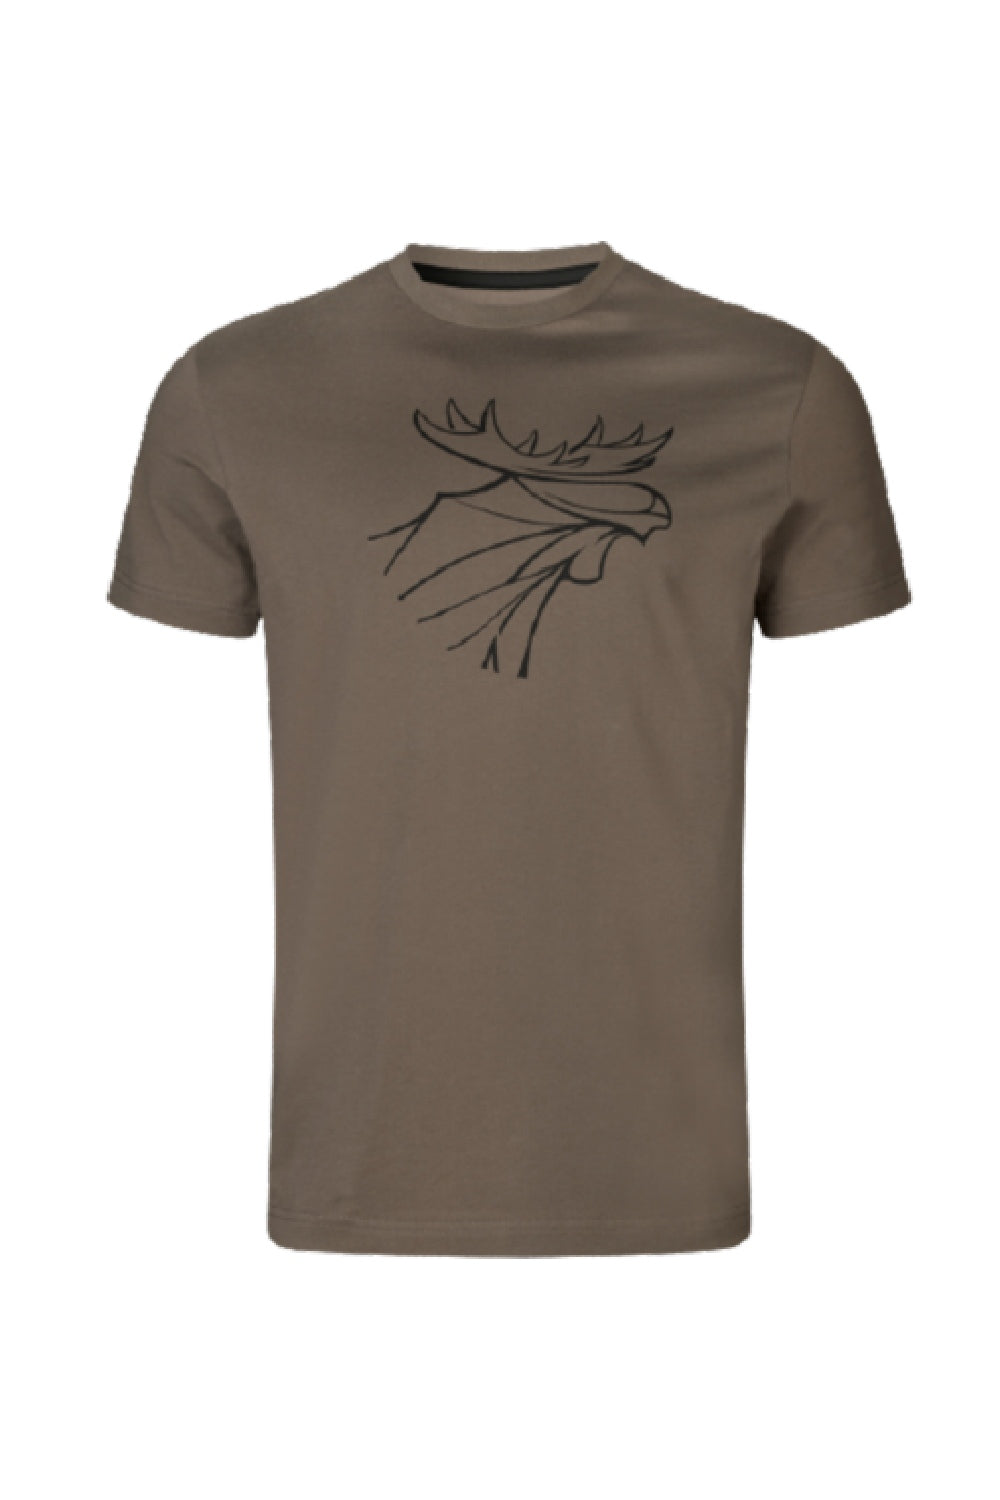 Harkila Graphic T-shirt 2-pack in Brown Granite/Phantom 